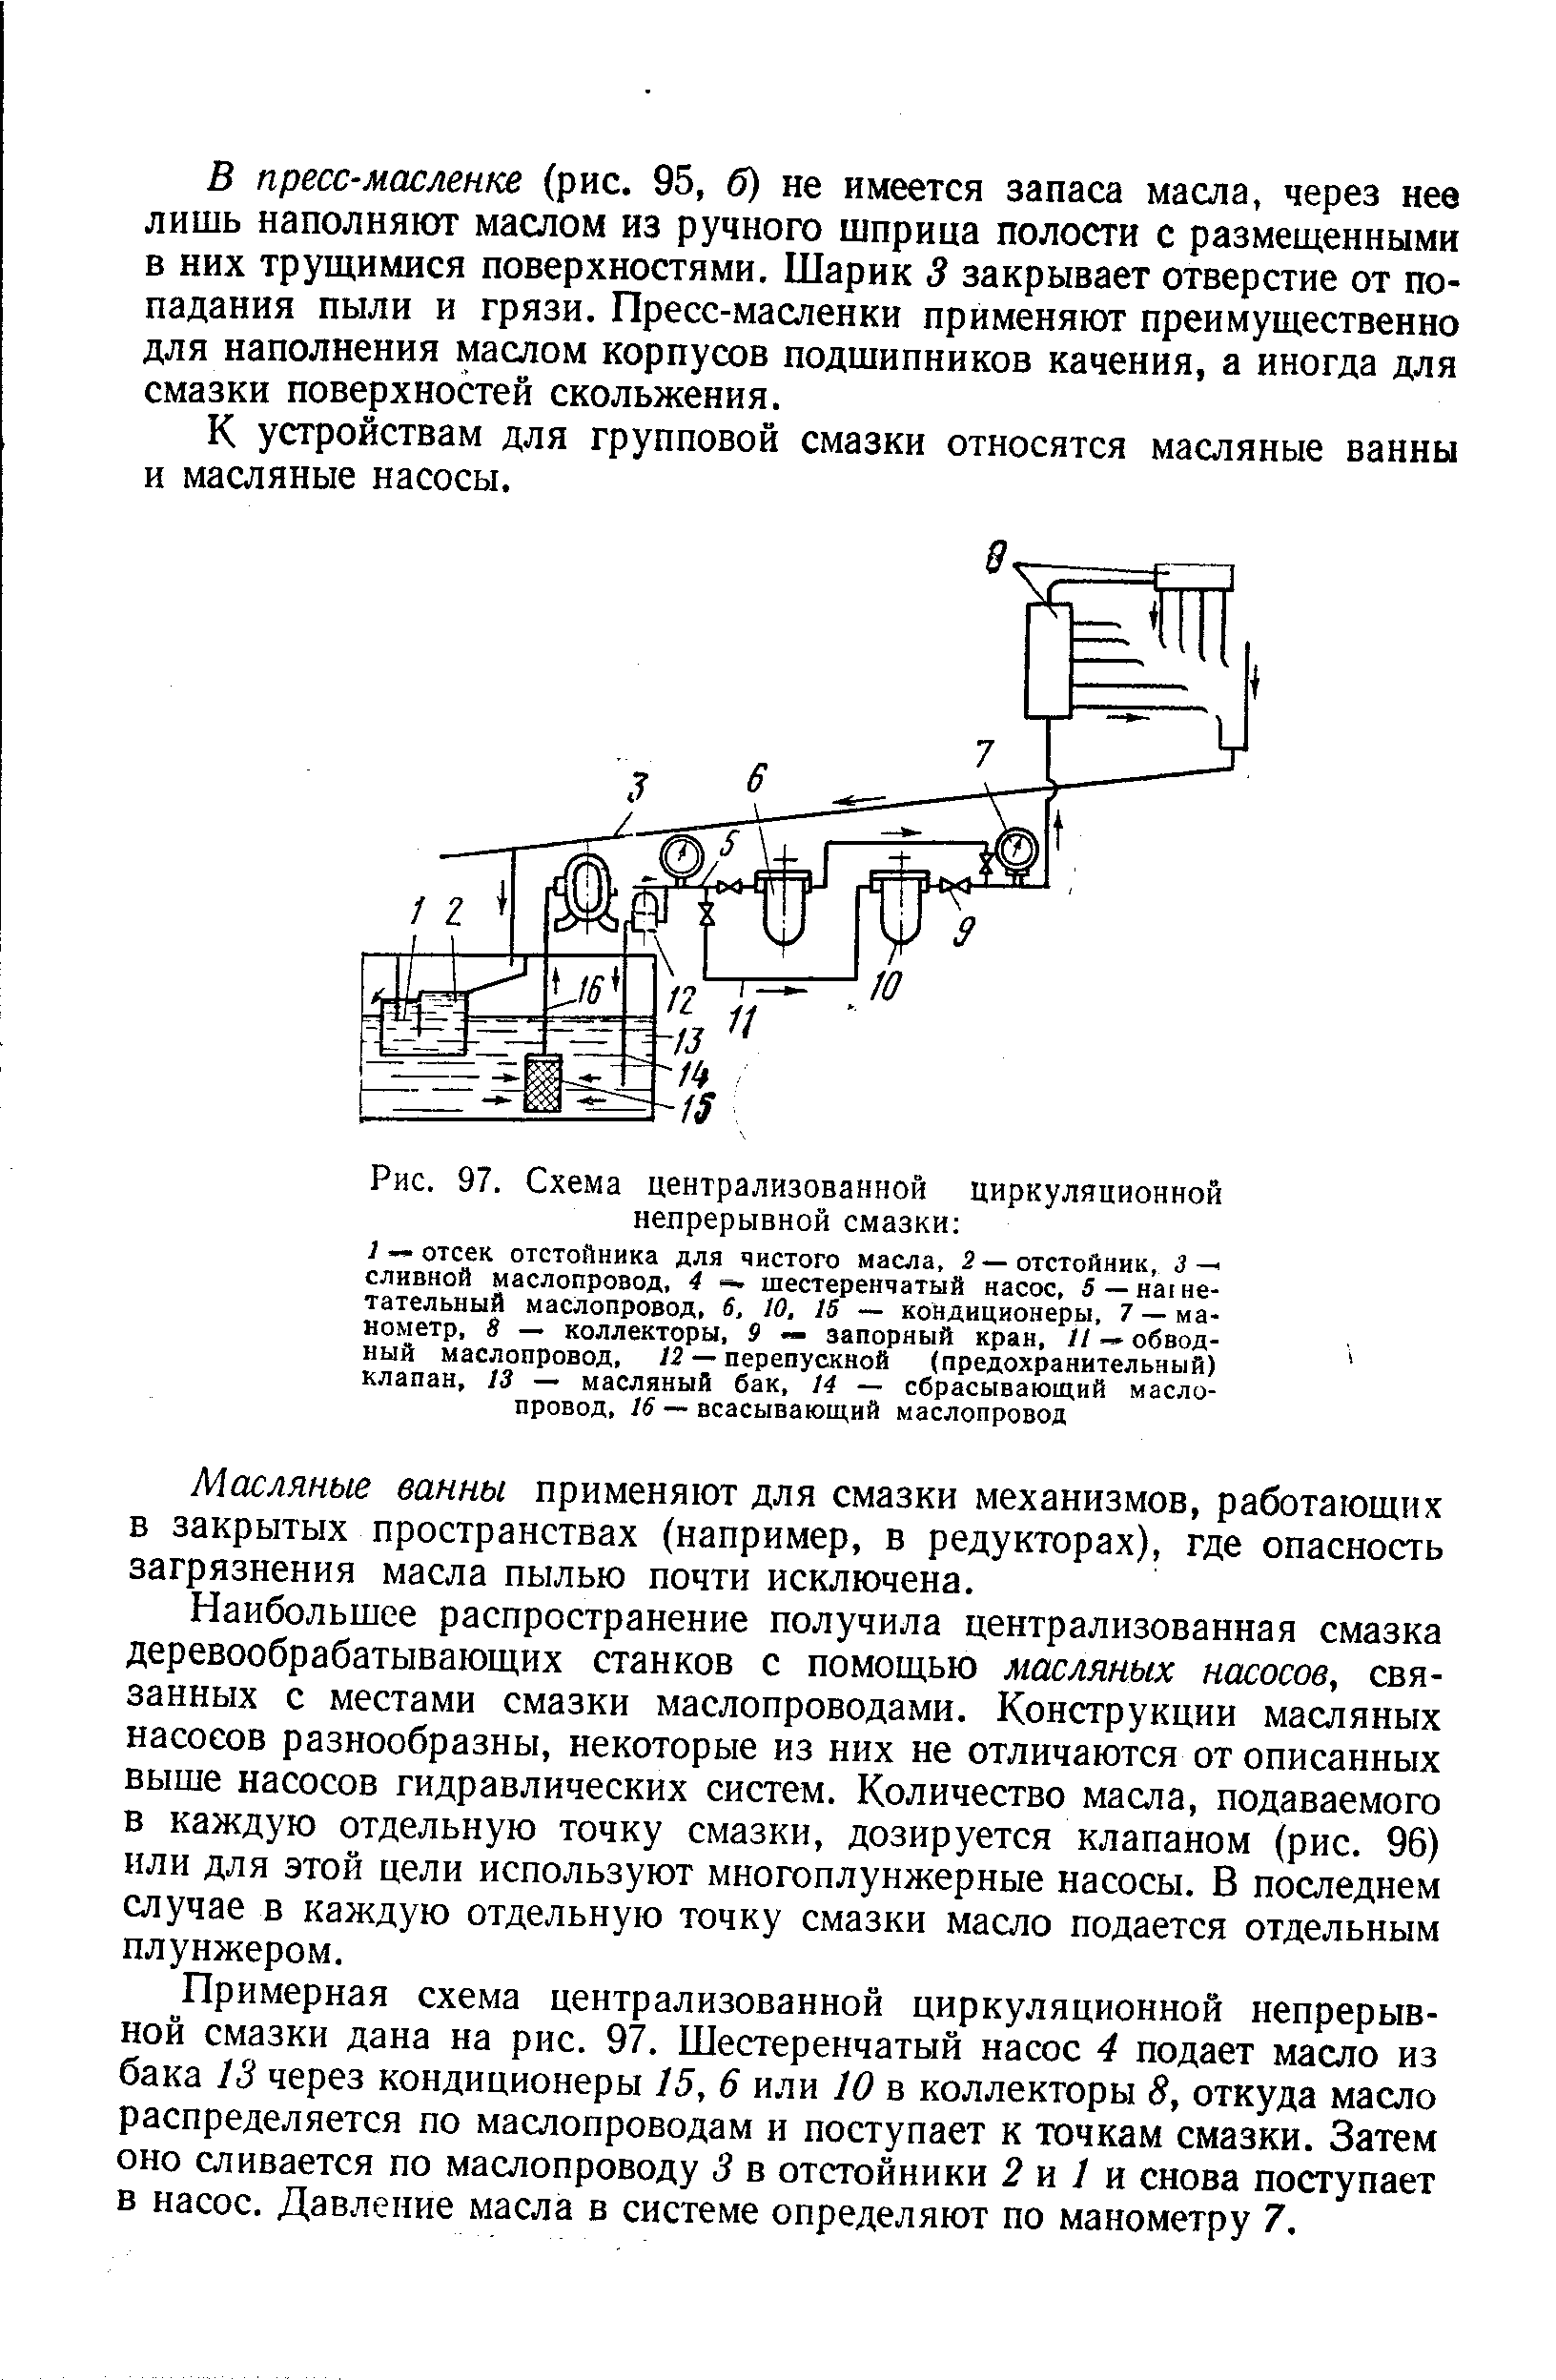 Рис. 97. Схема централизованной циркуляционной непрерывной смазки 
